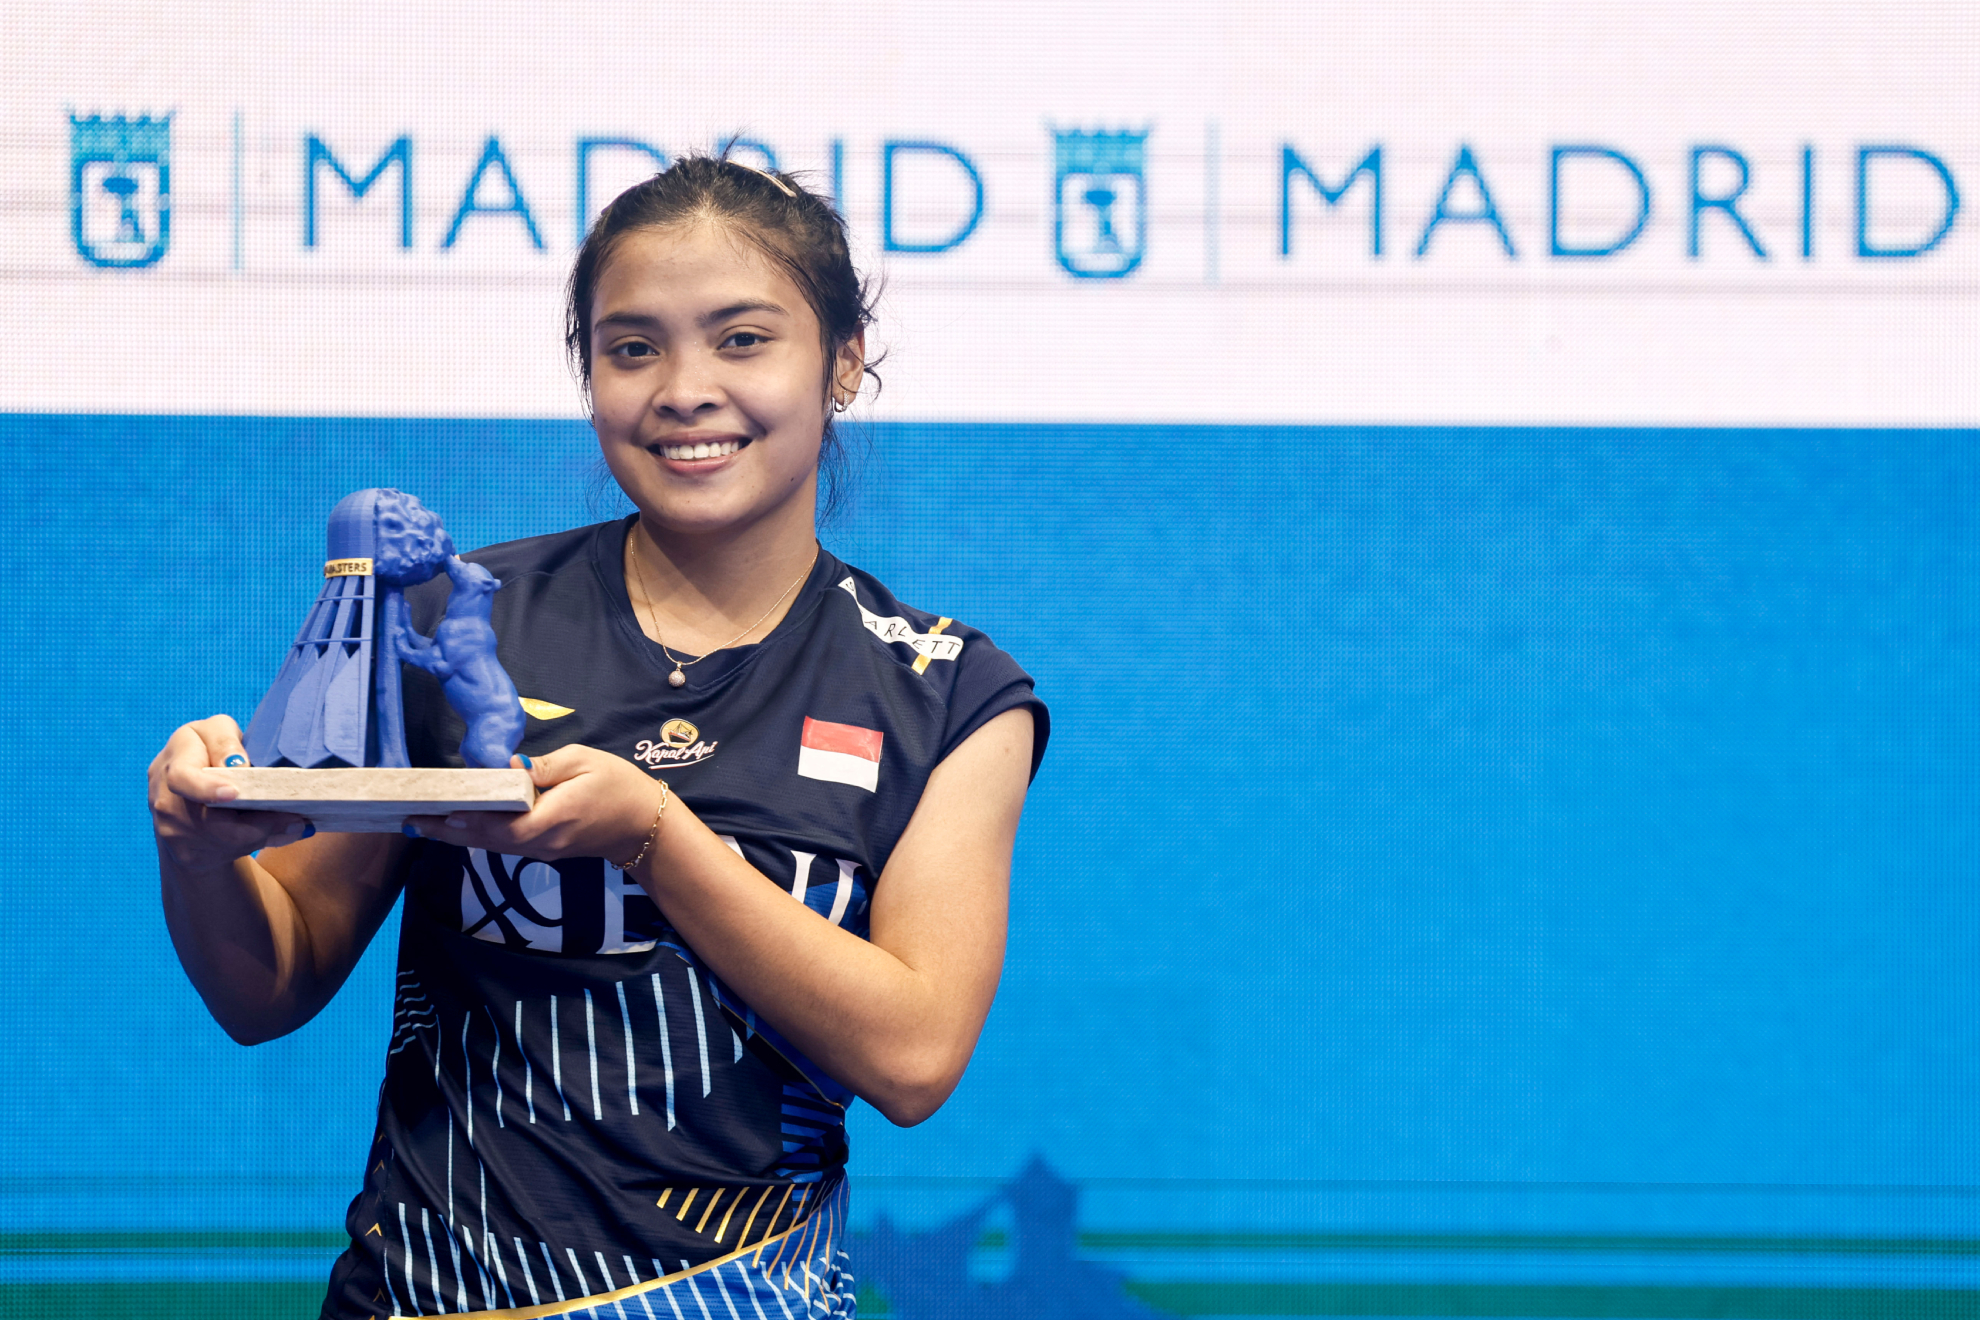 La indonesia Gregoria Mariska Tunjung celebra en el podio su victoria contra la inda Sindhu Pusarla en la final femenina del Madrid Spain Master.